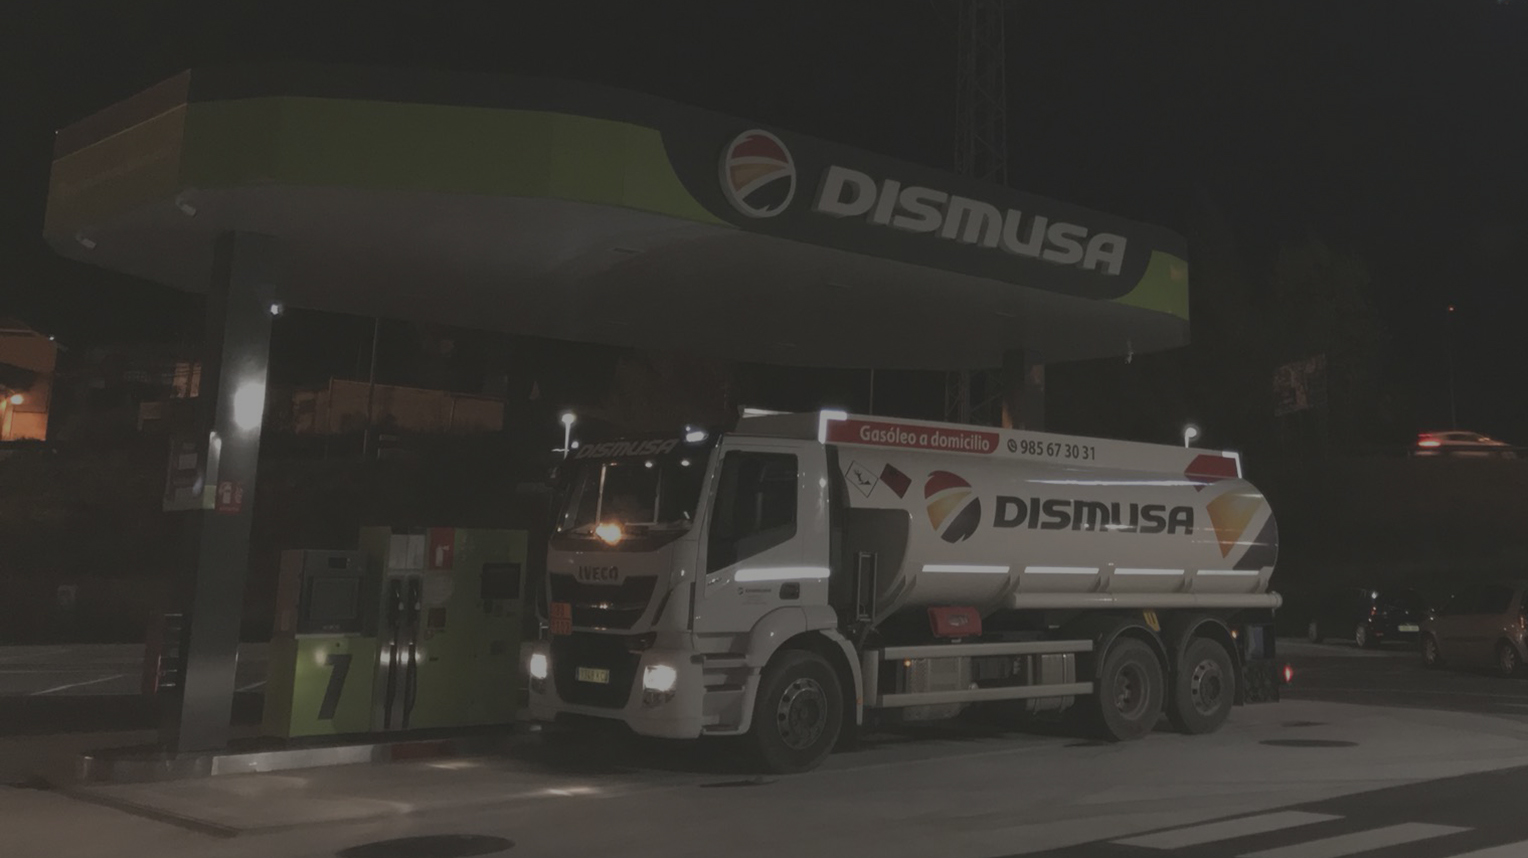 Imagen de fondo camion en una gasolinera dismusa